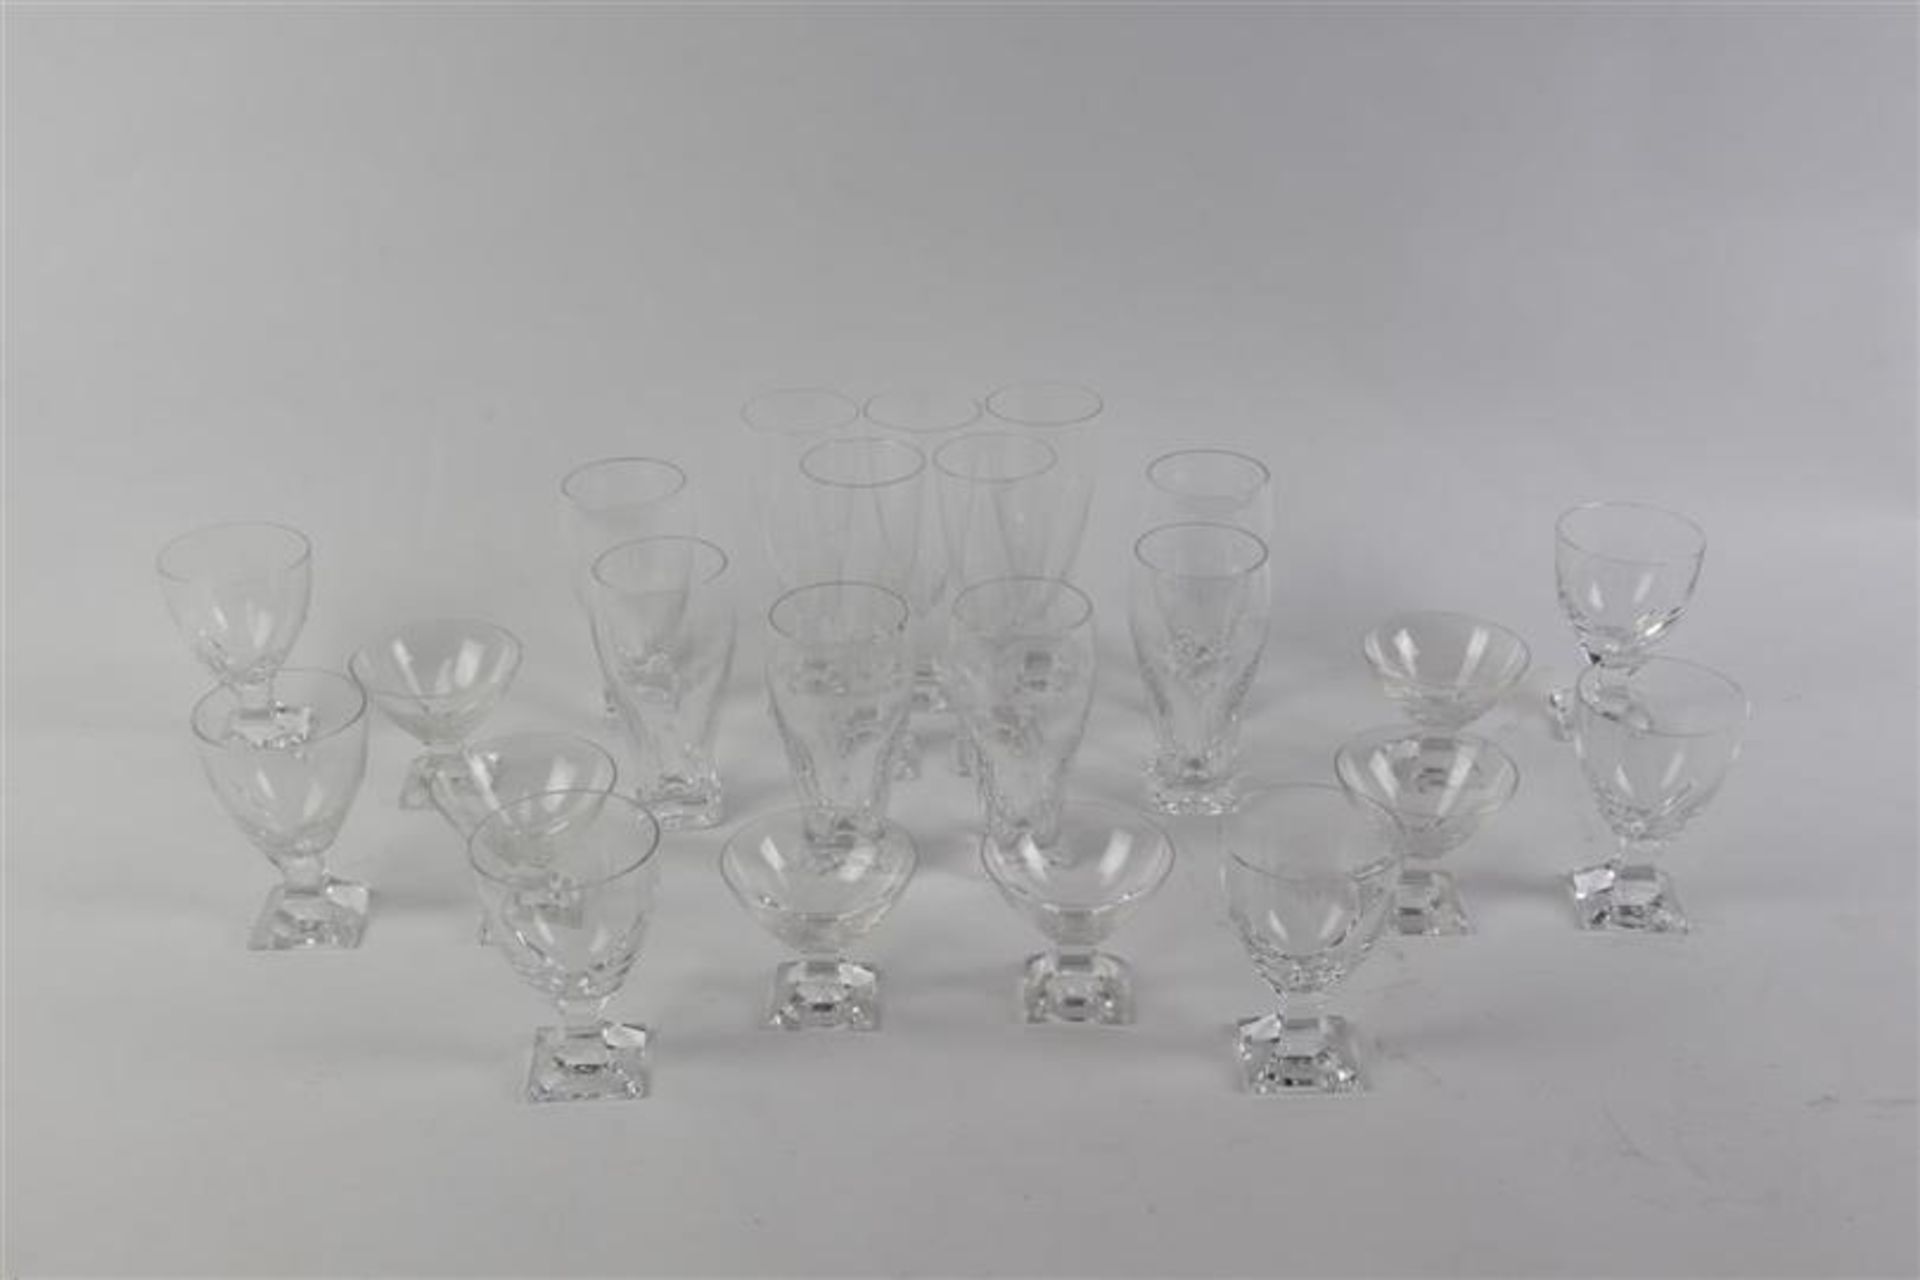 Glazen van het merk Peil, Duitsland, 23 stuks.